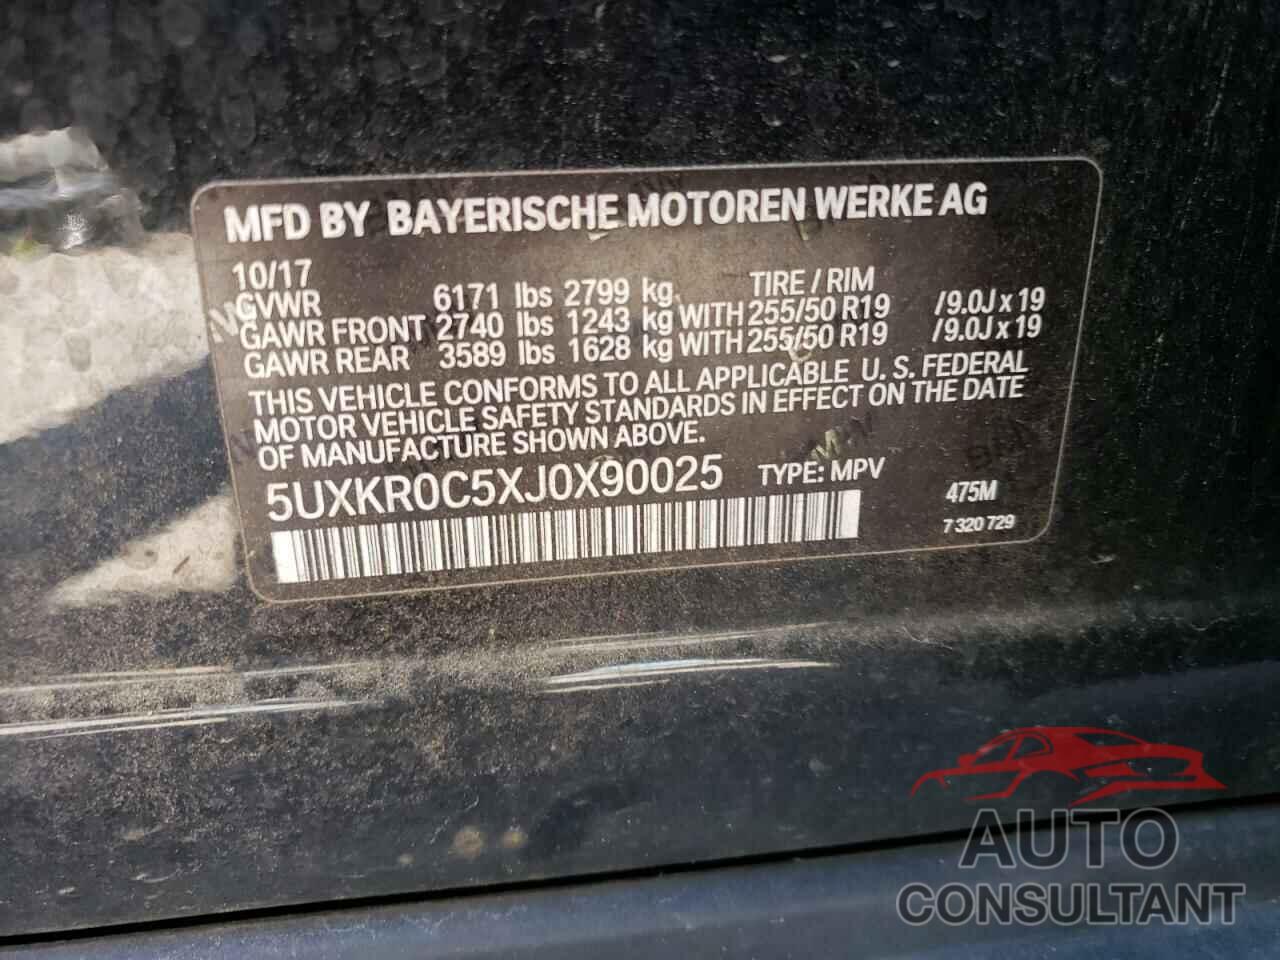 BMW X5 2018 - 5UXKR0C5XJ0X90025